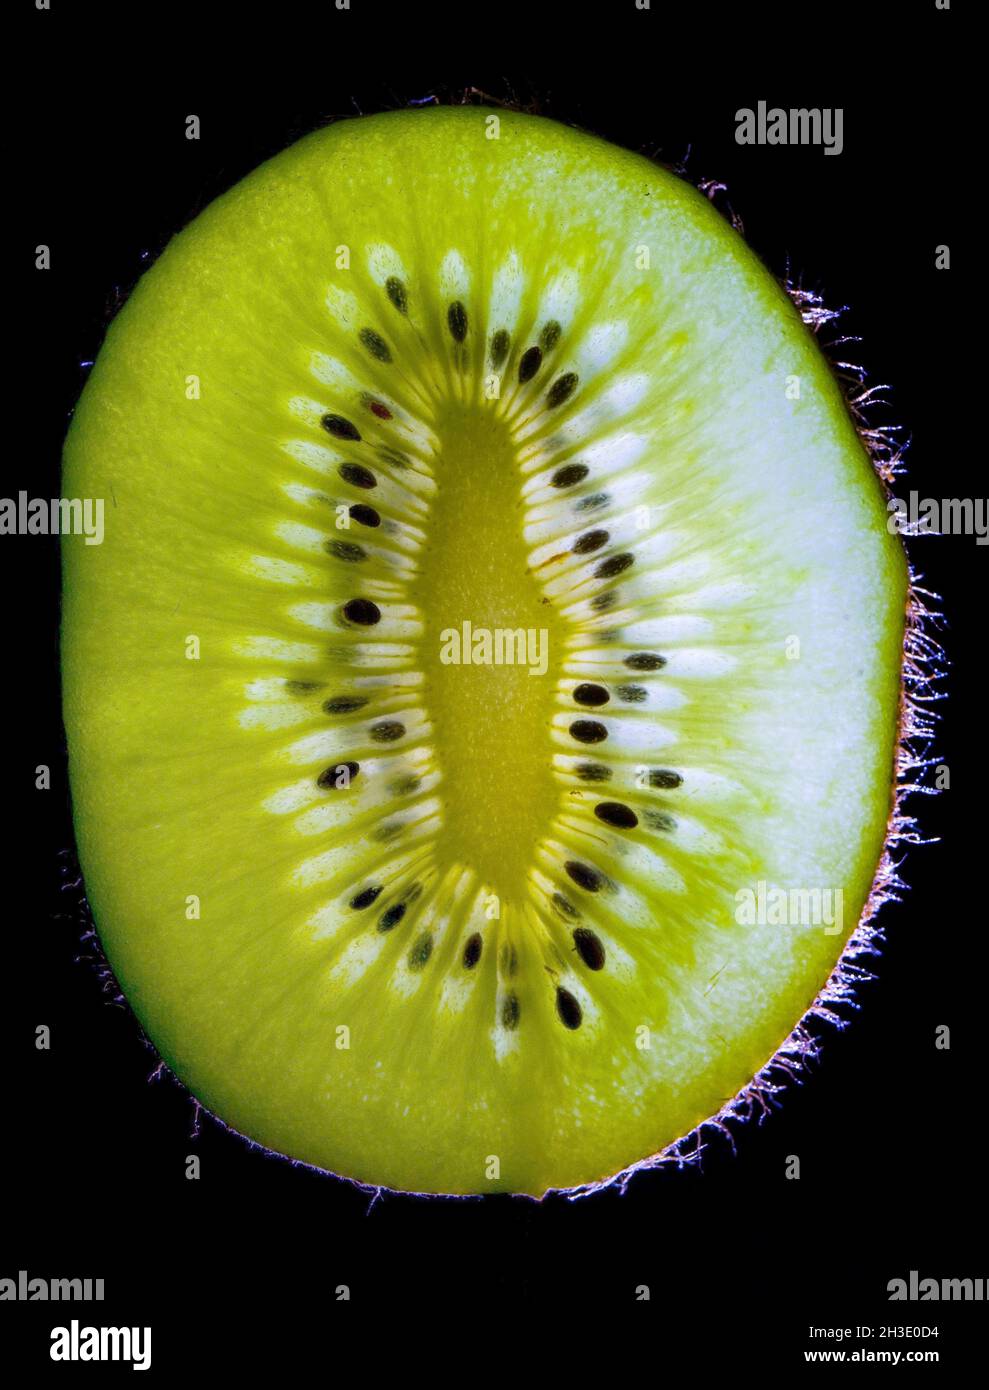 kiwi fruit, Chinese gooseberry (Actinidia deliciosa), kiwi slice in backlight, black background Stock Photo